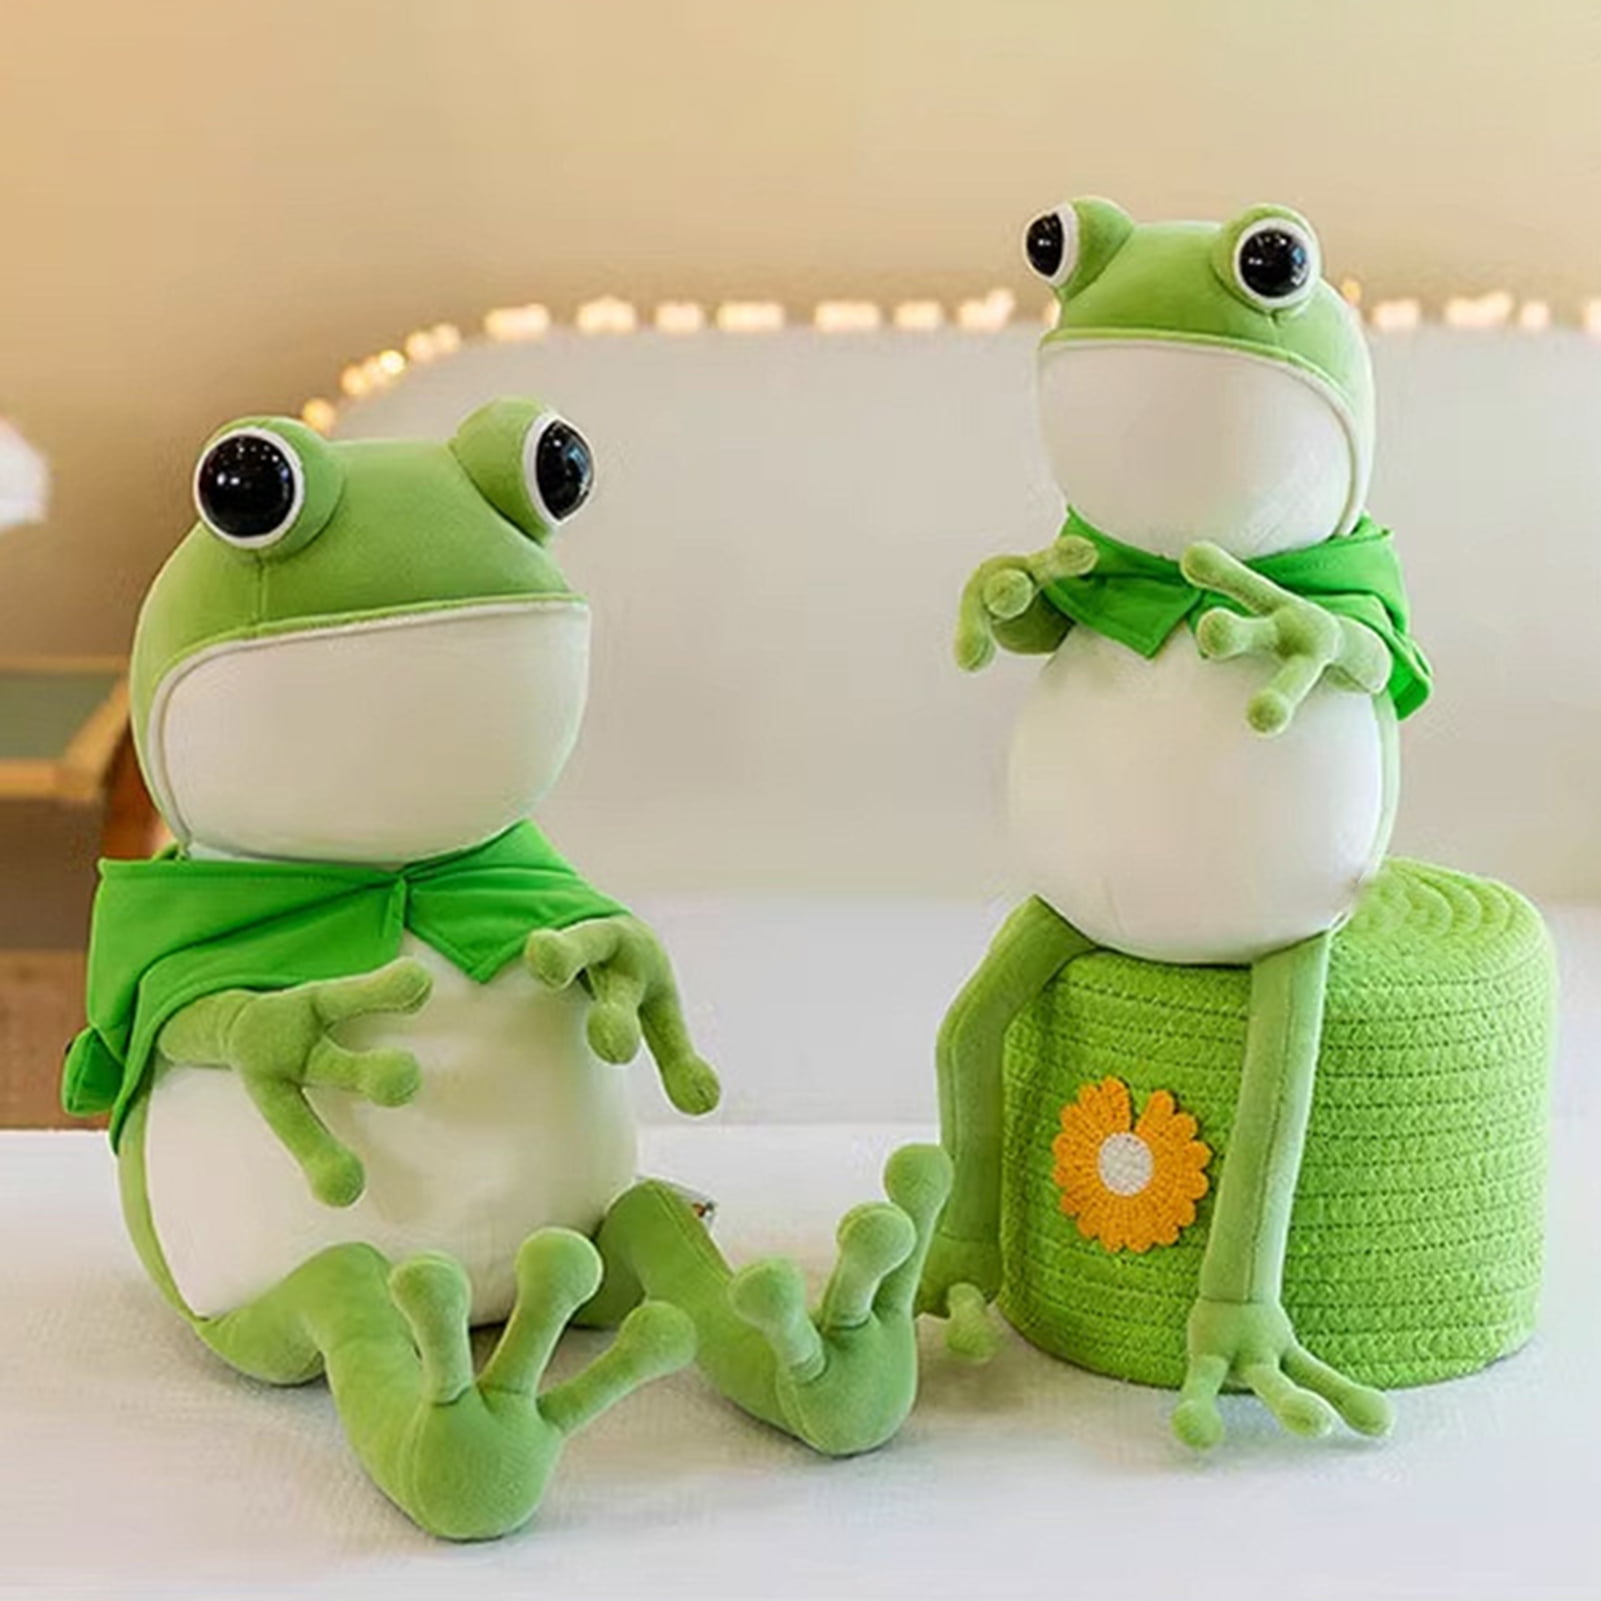 LYU Cartoon Frog Stuffed Pillow Toy Cute Big Eyes Long-legged